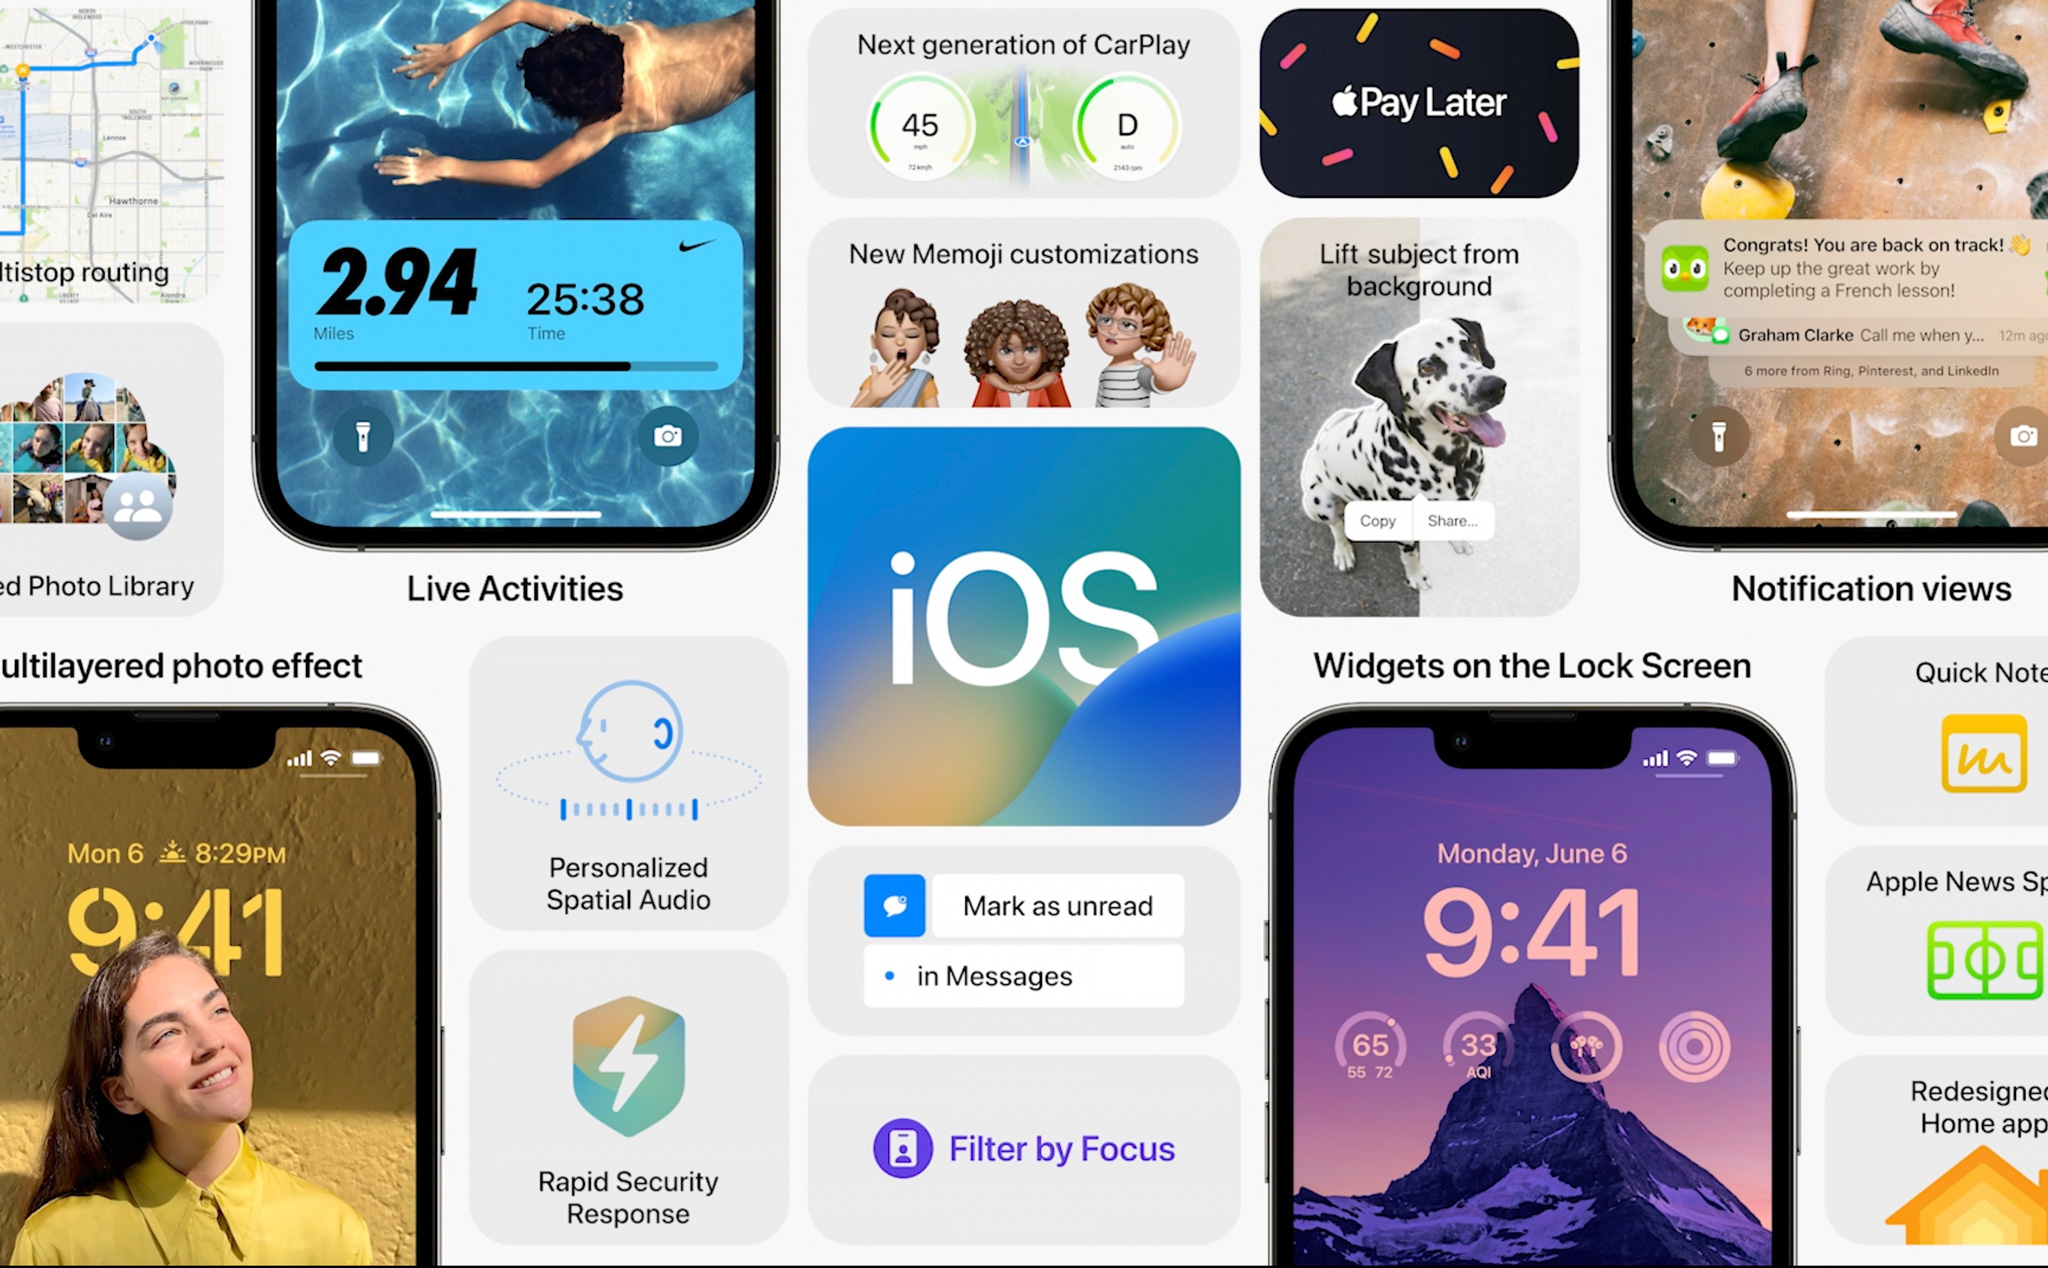 Kiểu đồng hồ trên iOS 16 cực kỳ đa dạng và thu hút! Ngoài những kiểu đồng hồ truyền thống, iOS 16 còn có nhiều loại đồng hồ thông minh, độc đáo, thể hiện cá tính của người dùng. Trải nghiệm hệ điều hành mới nhất của Apple để khám phá thế giới đồng hồ đa dạng và đầy màu sắc!